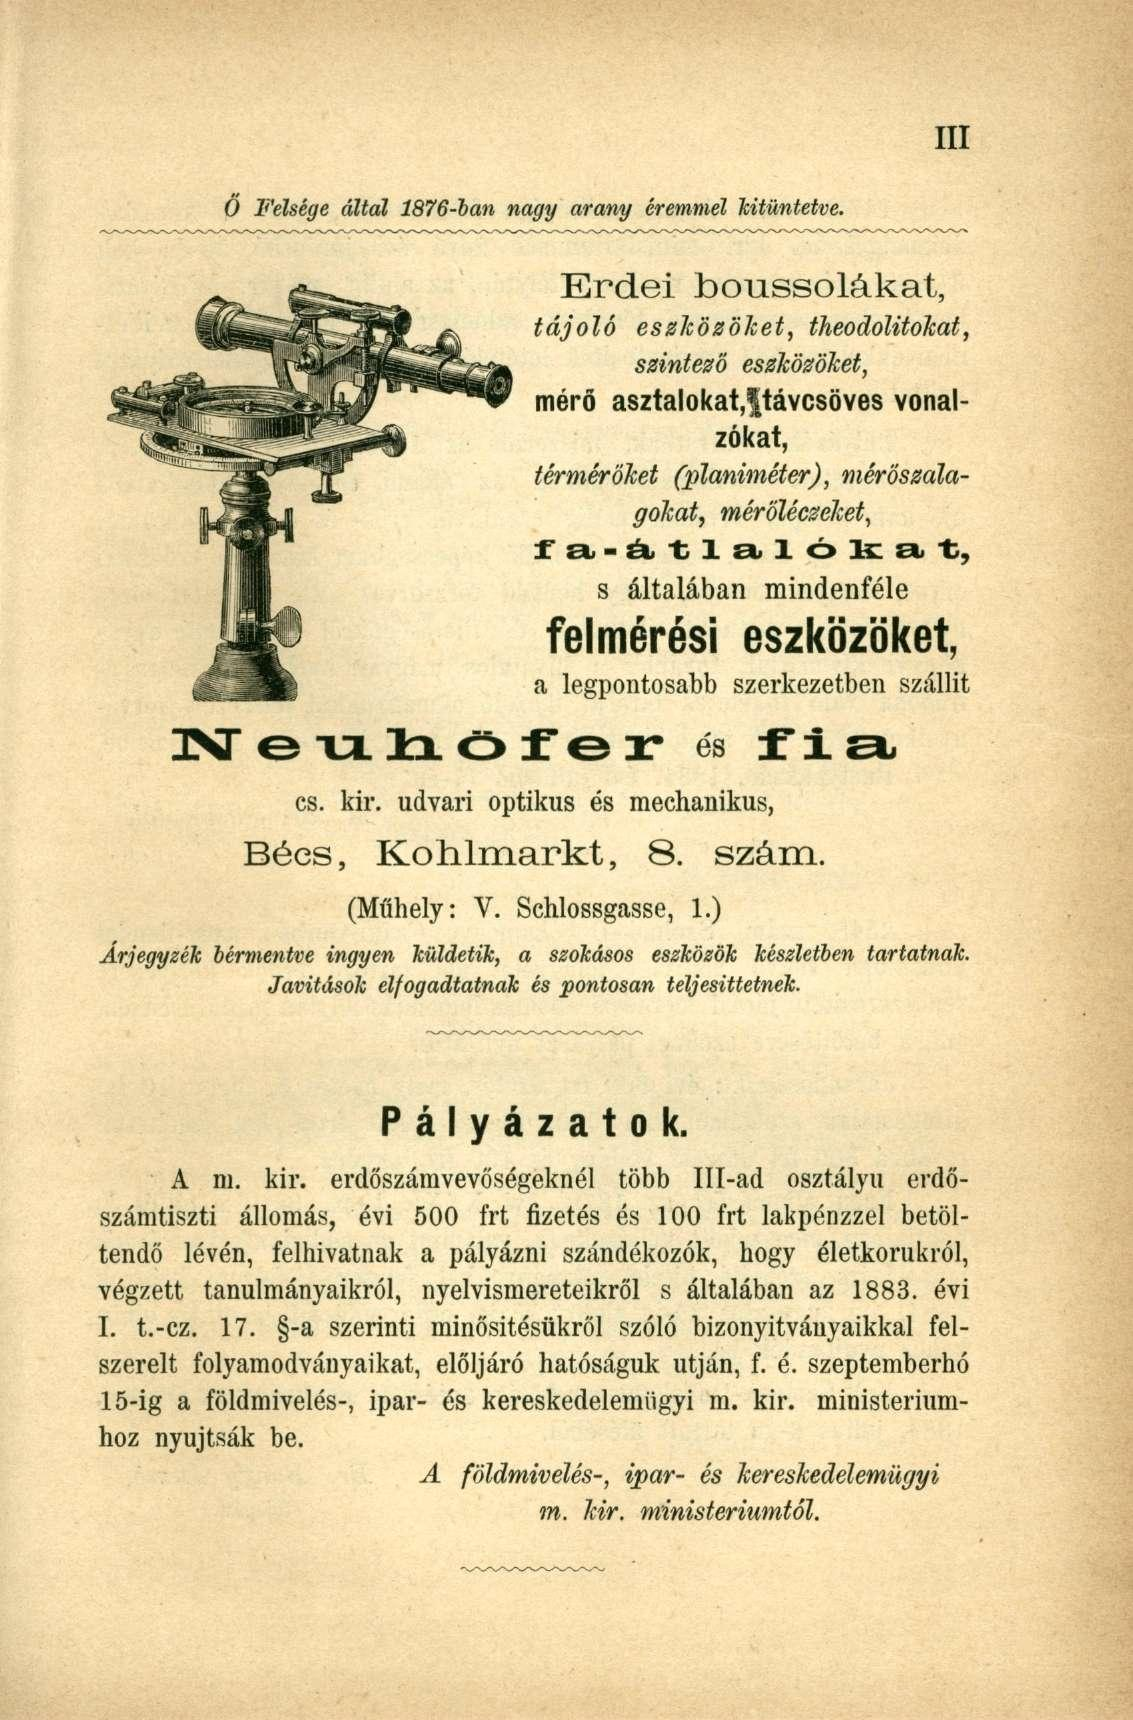 Ó Felsége által 1876-ban nagy arany éremmel kitüntetve.